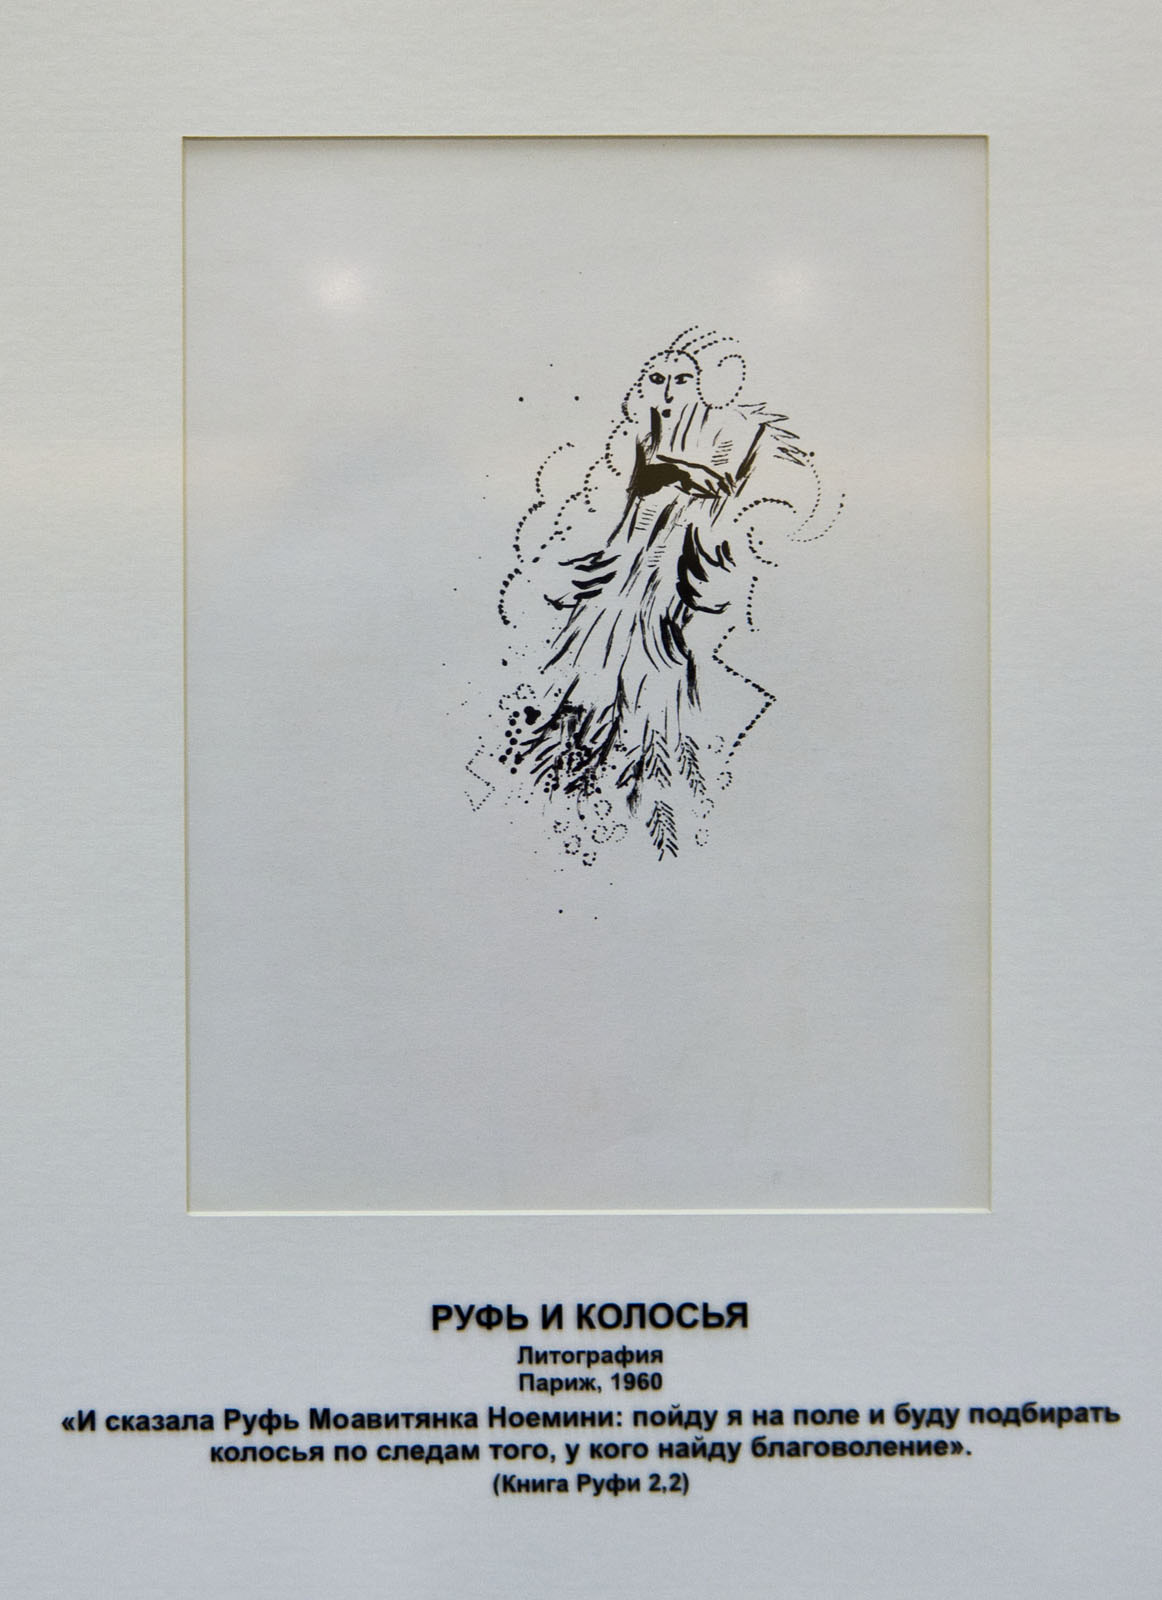 Фото №74456. «Руфь и колосья», Марк Шагал, литография, Париж, 1960